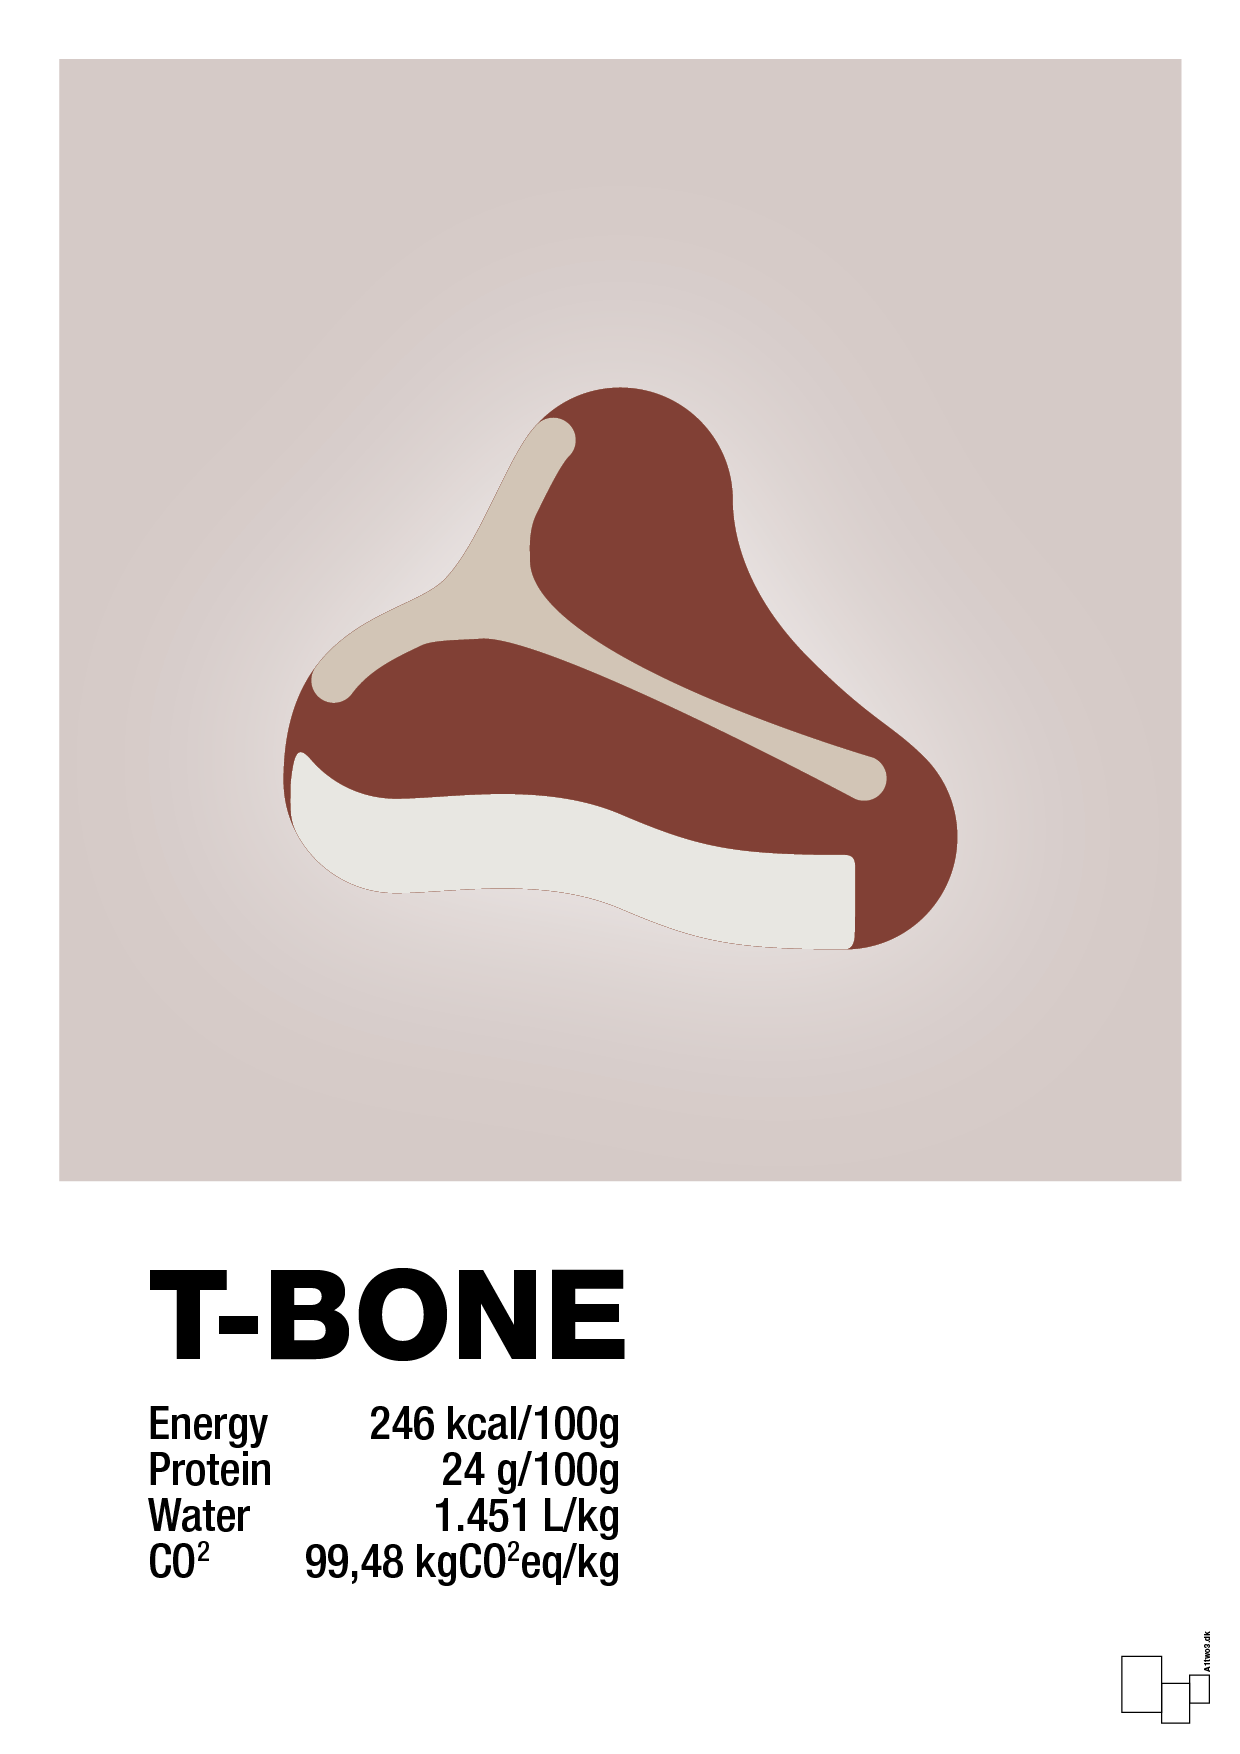 t-bone nutrition og miljø - Plakat med Mad & Drikke i Broken Beige